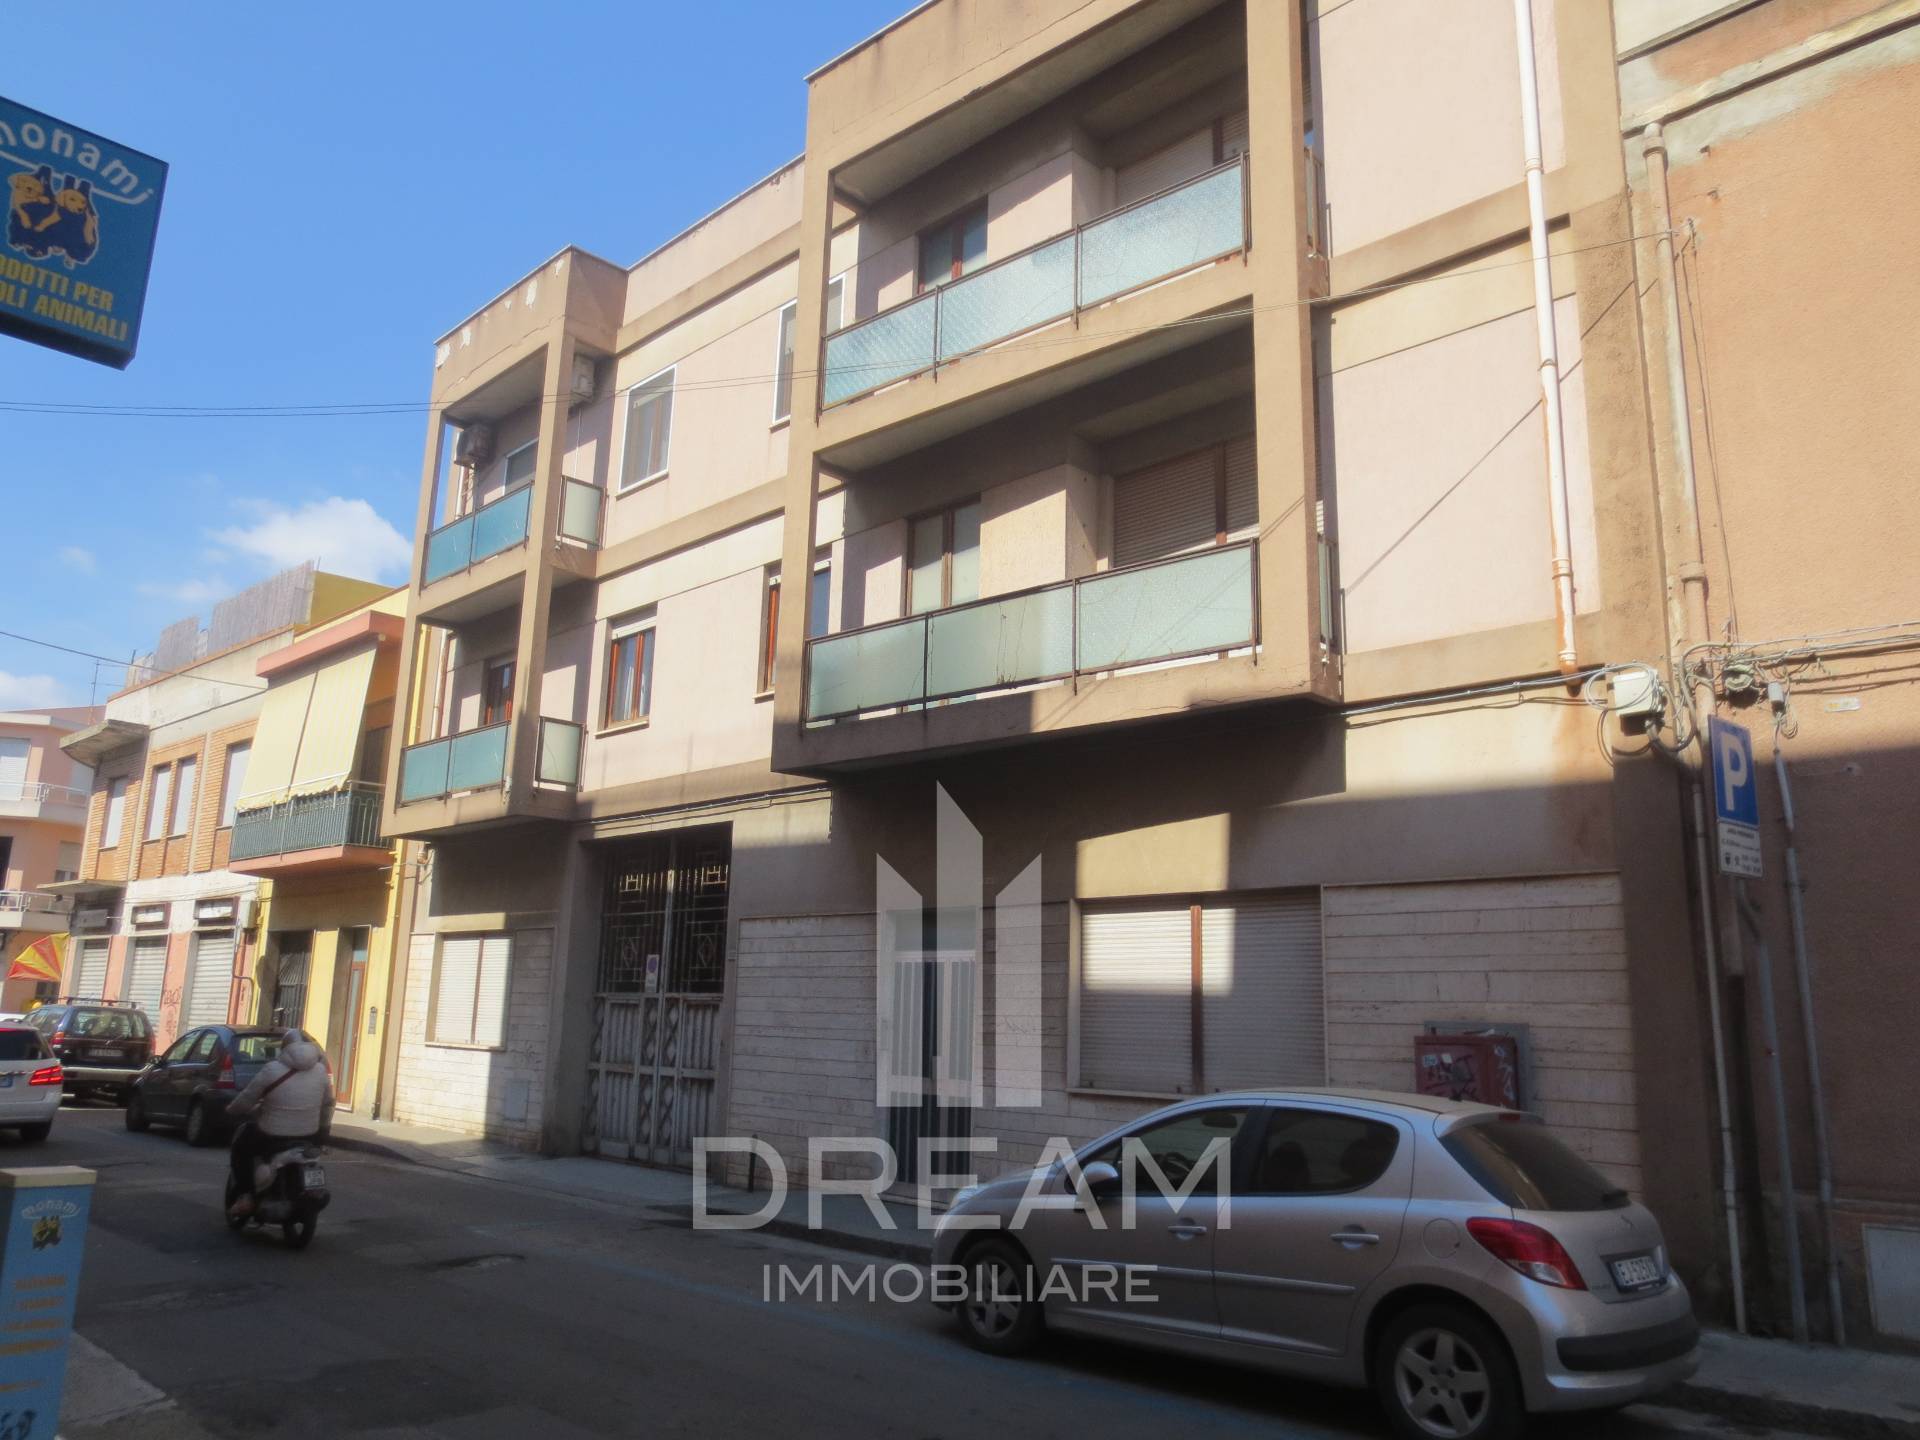 Appartamento in vendita a Quartu Sant'Elena, 5 locali, prezzo € 280.000 | PortaleAgenzieImmobiliari.it